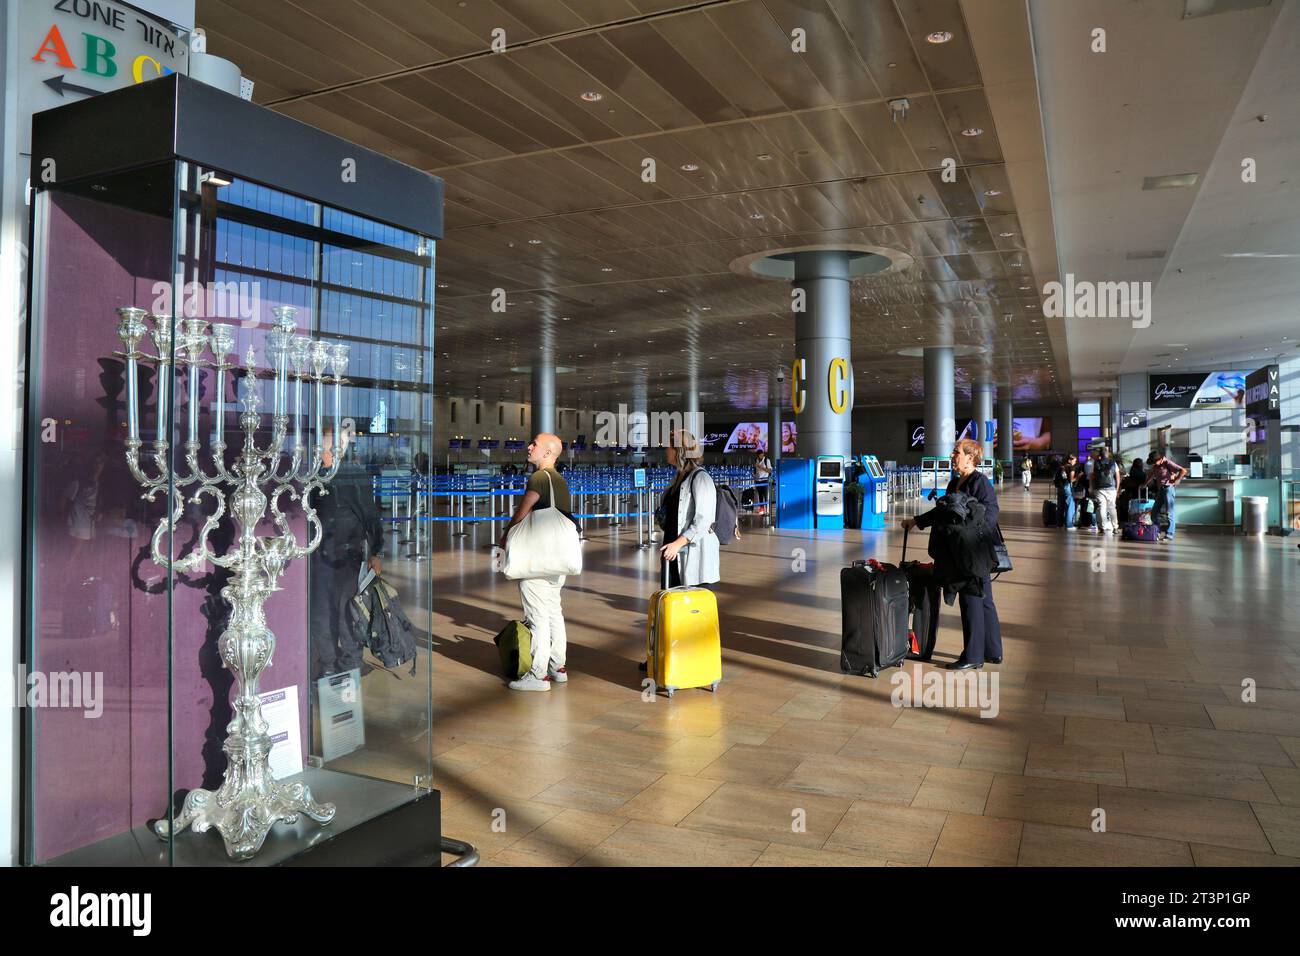 TEL AVIV, ISRAELE - 4 NOVEMBRE 2022: I passeggeri aspettano all'aeroporto ben Gurion di Tel Aviv, Israele. E' il più grande e importante aeroporto di Israele Foto Stock